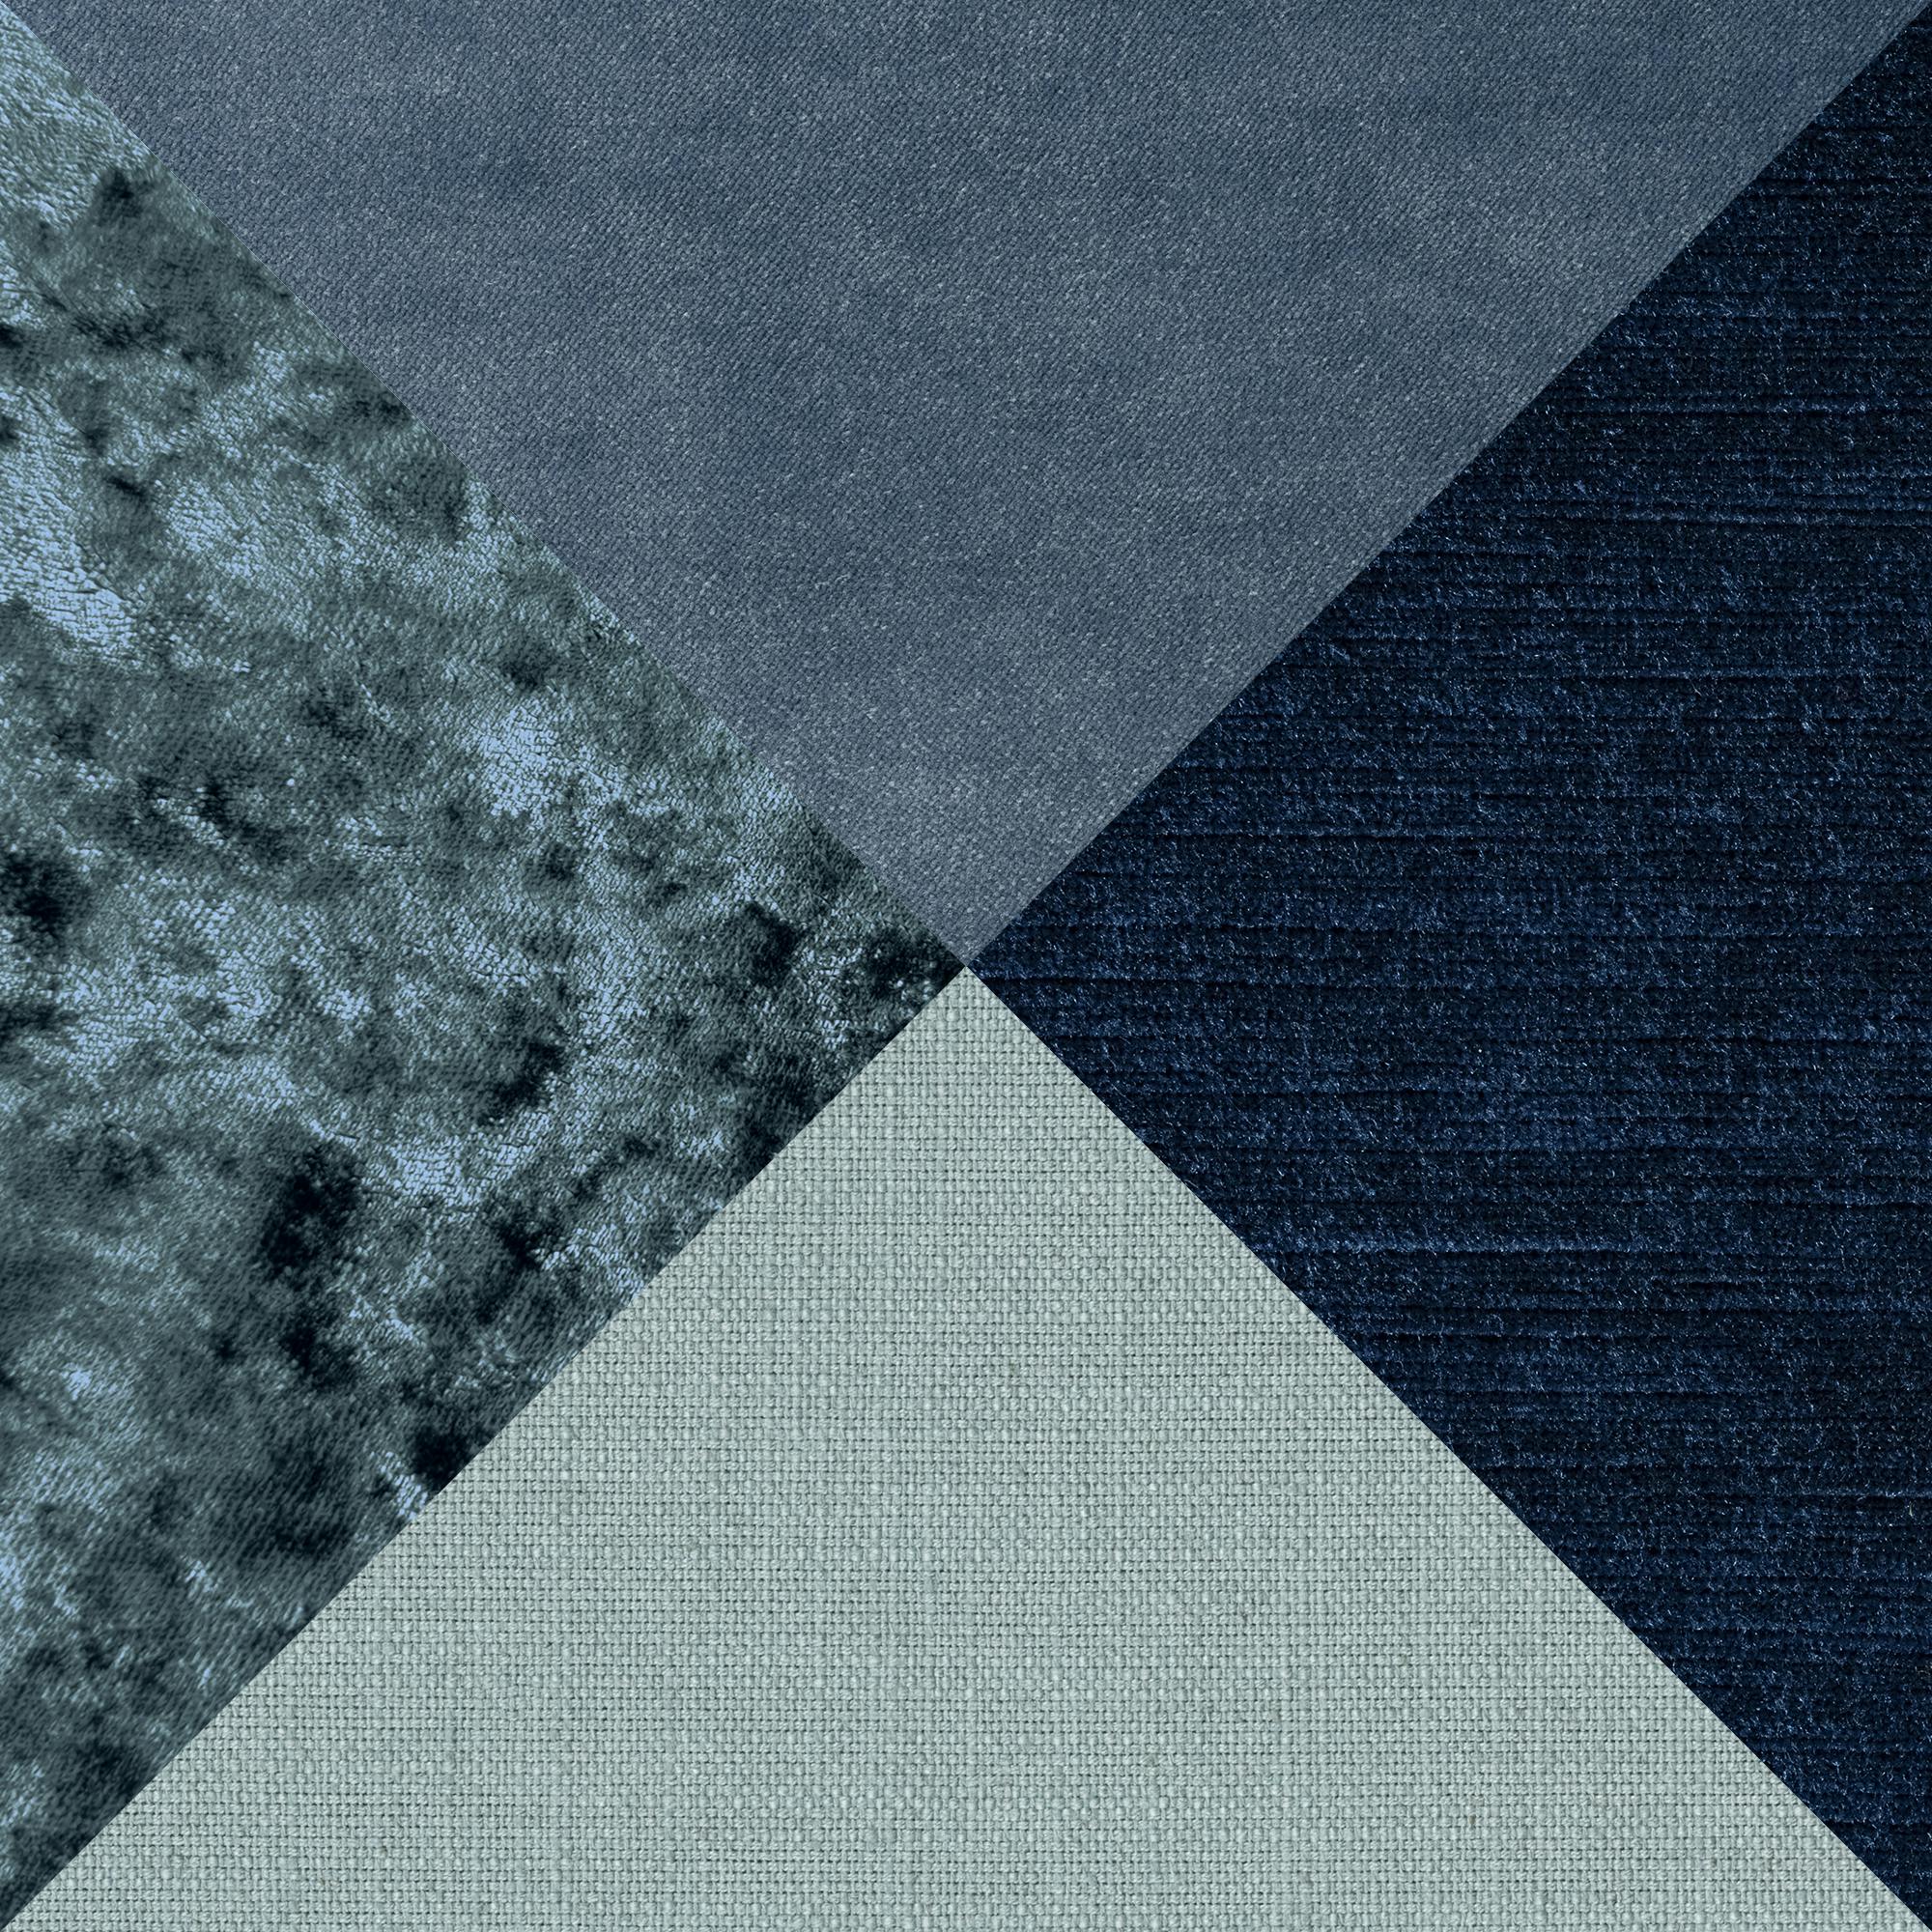 Sweef Patch Blaue Töne (Unikate, Farben variieren)